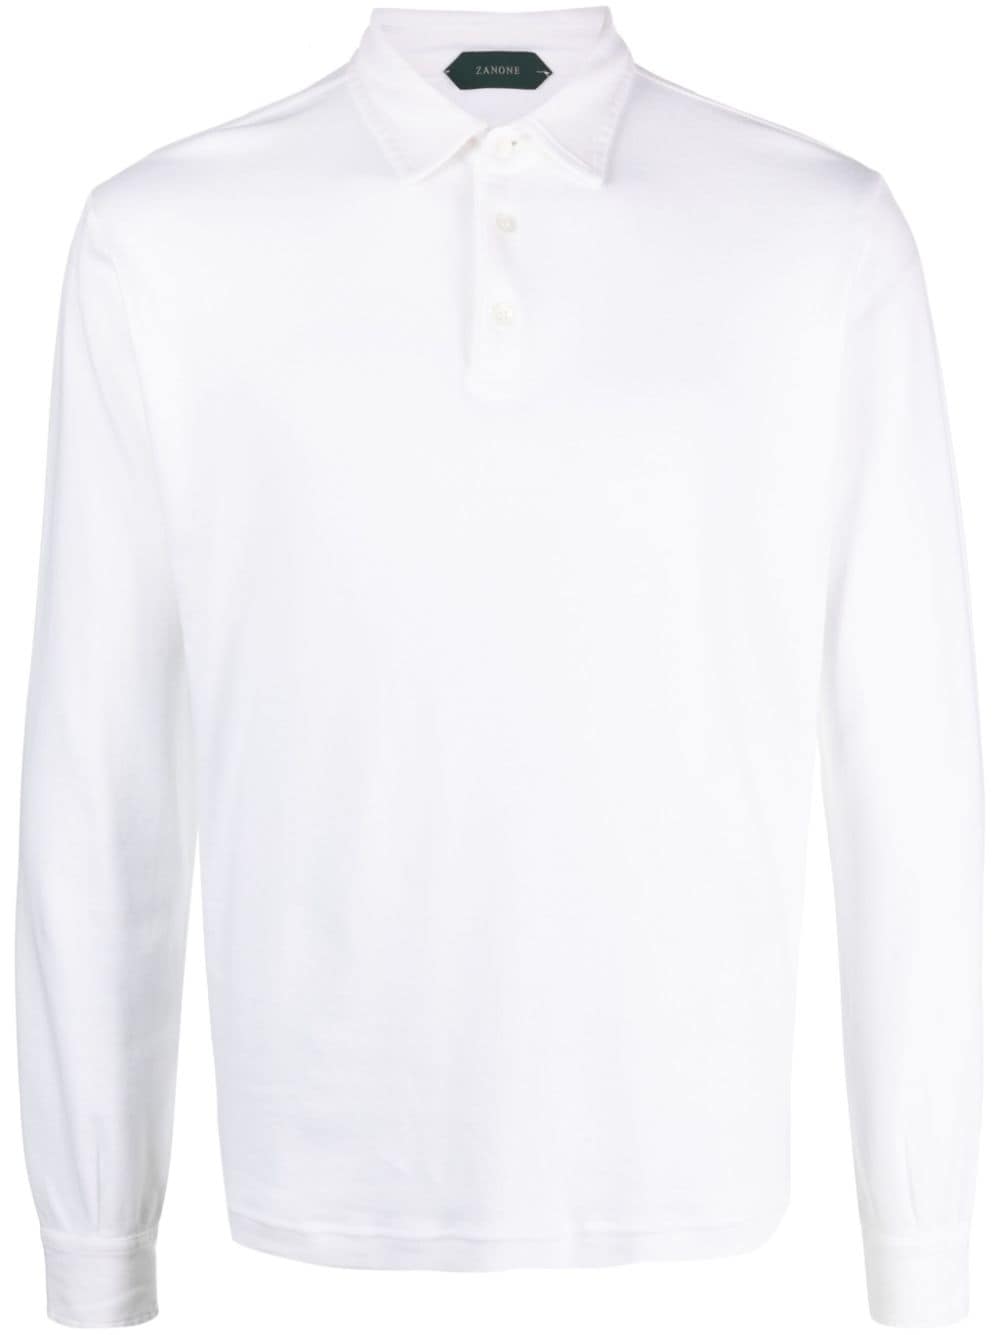 Zanone cotton polo shirt - White von Zanone